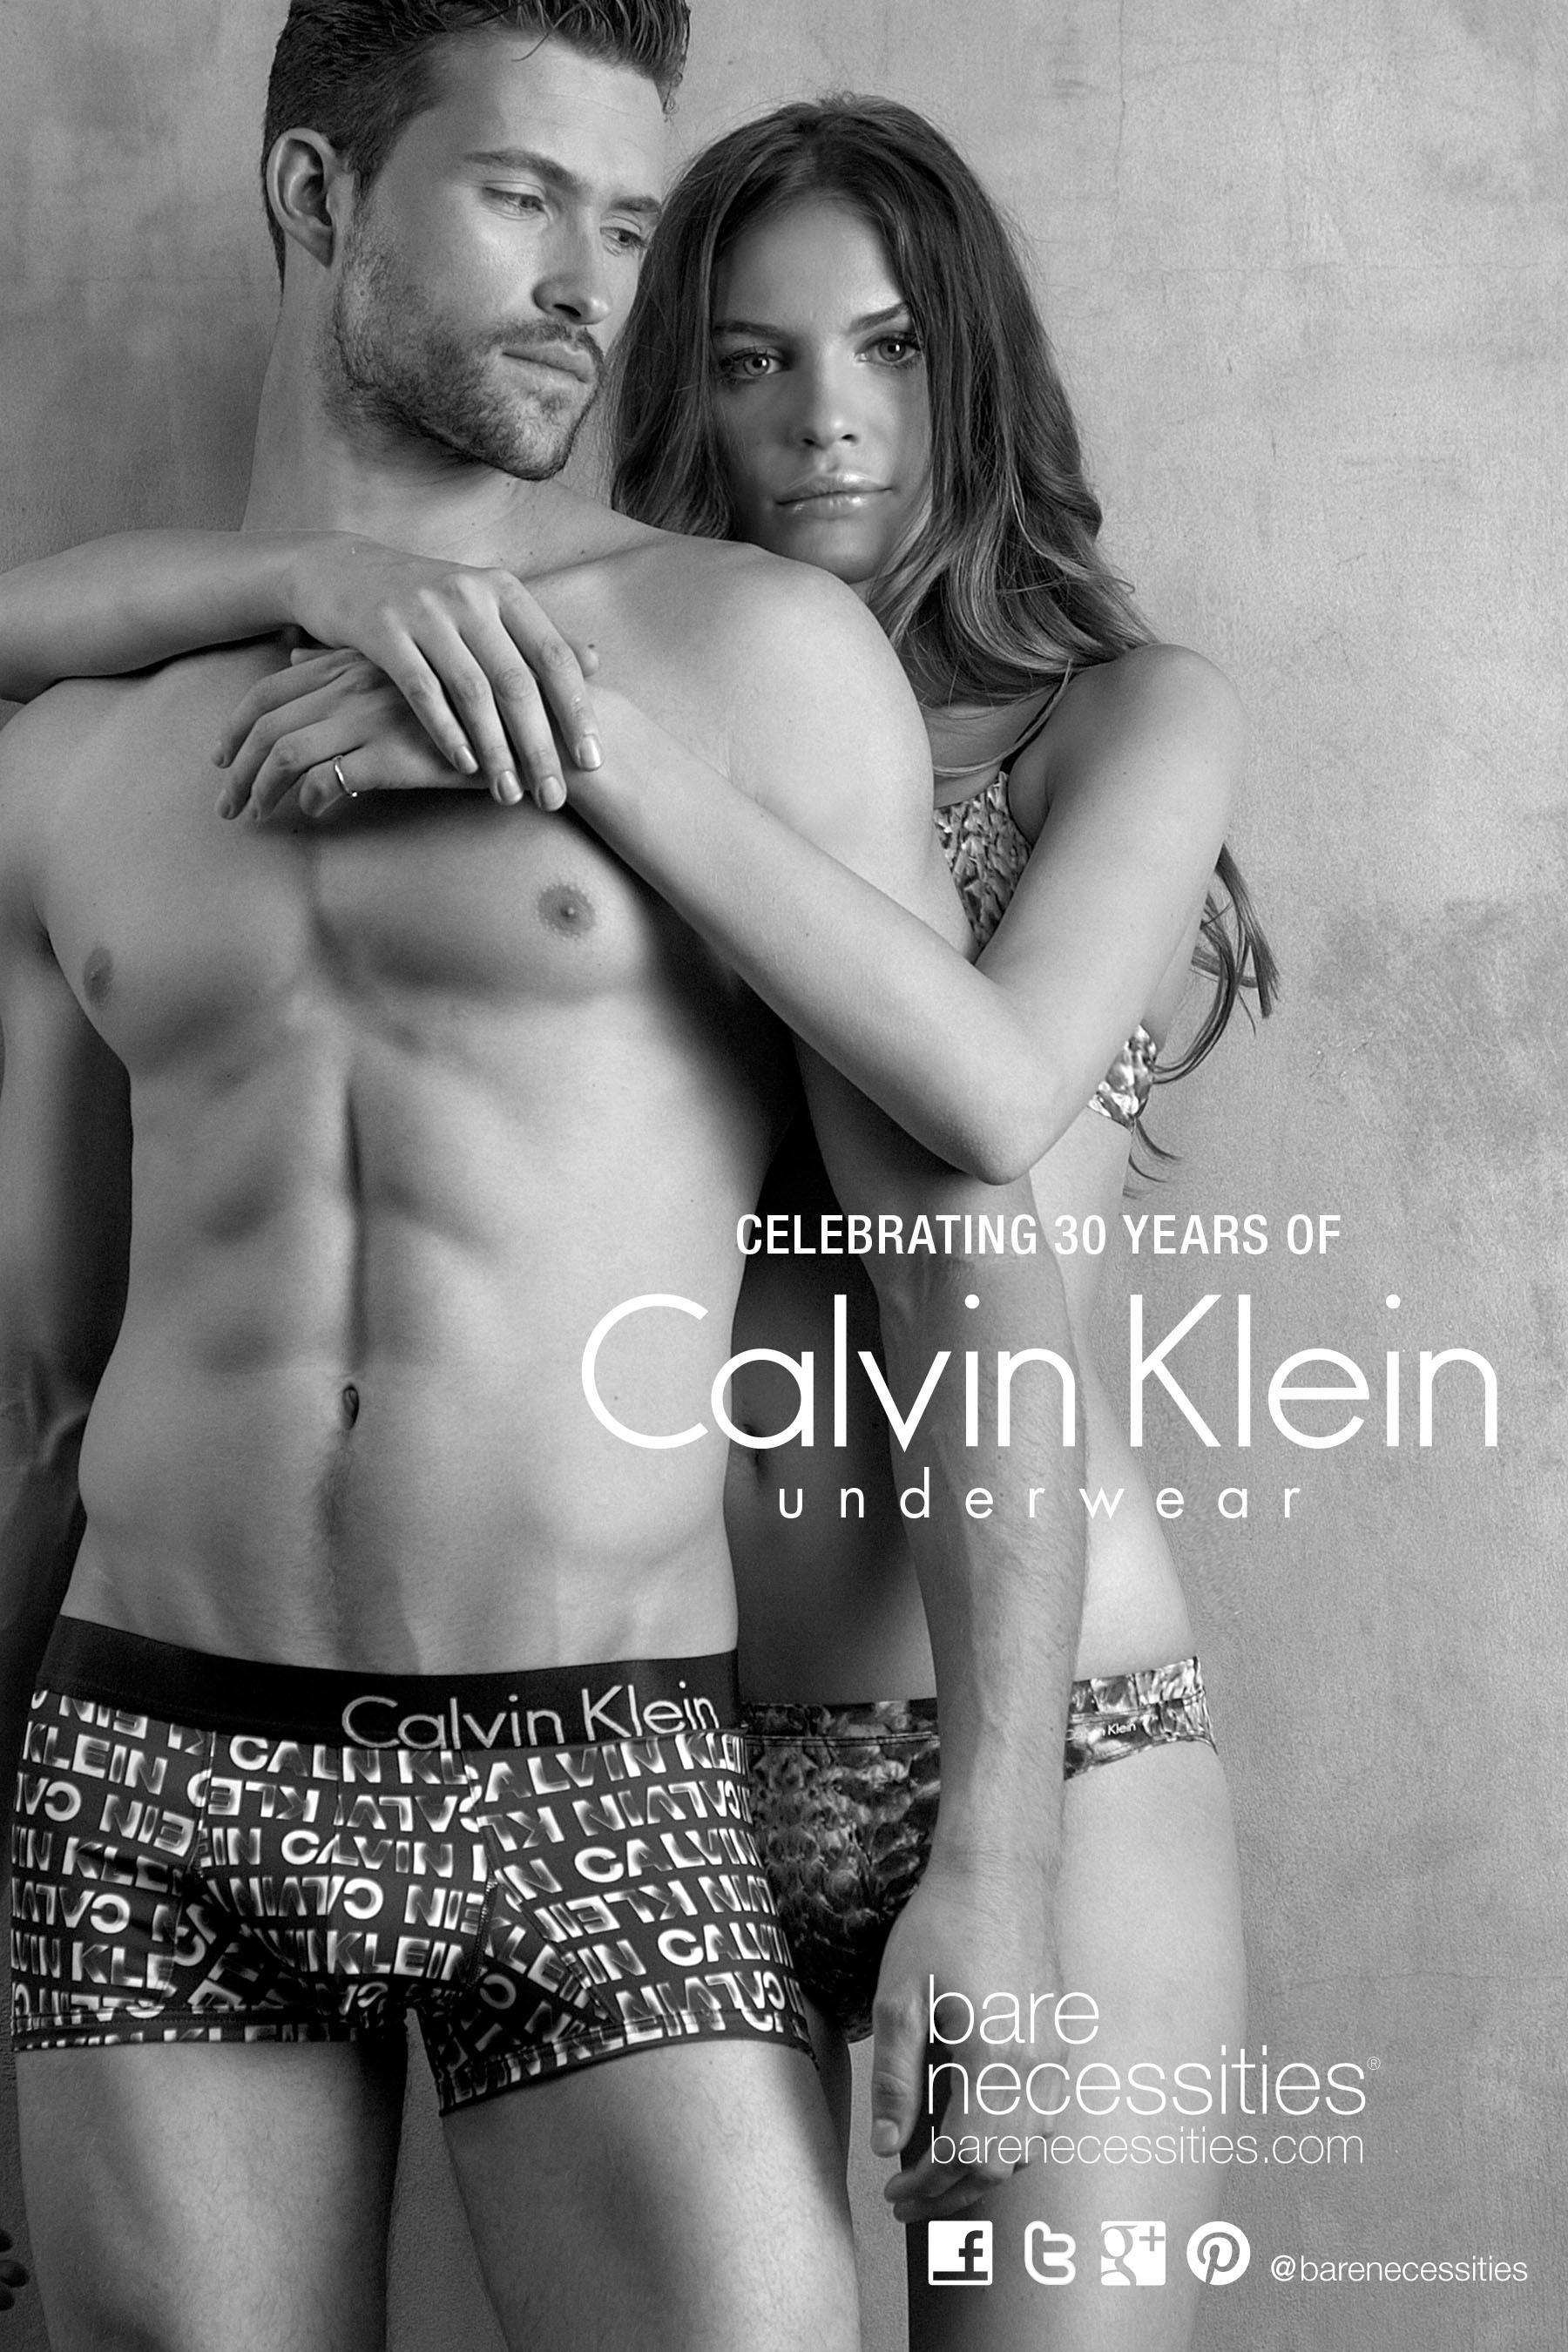 Bare Necessities Celebrates 30 Years of Calvin Klein Underwear